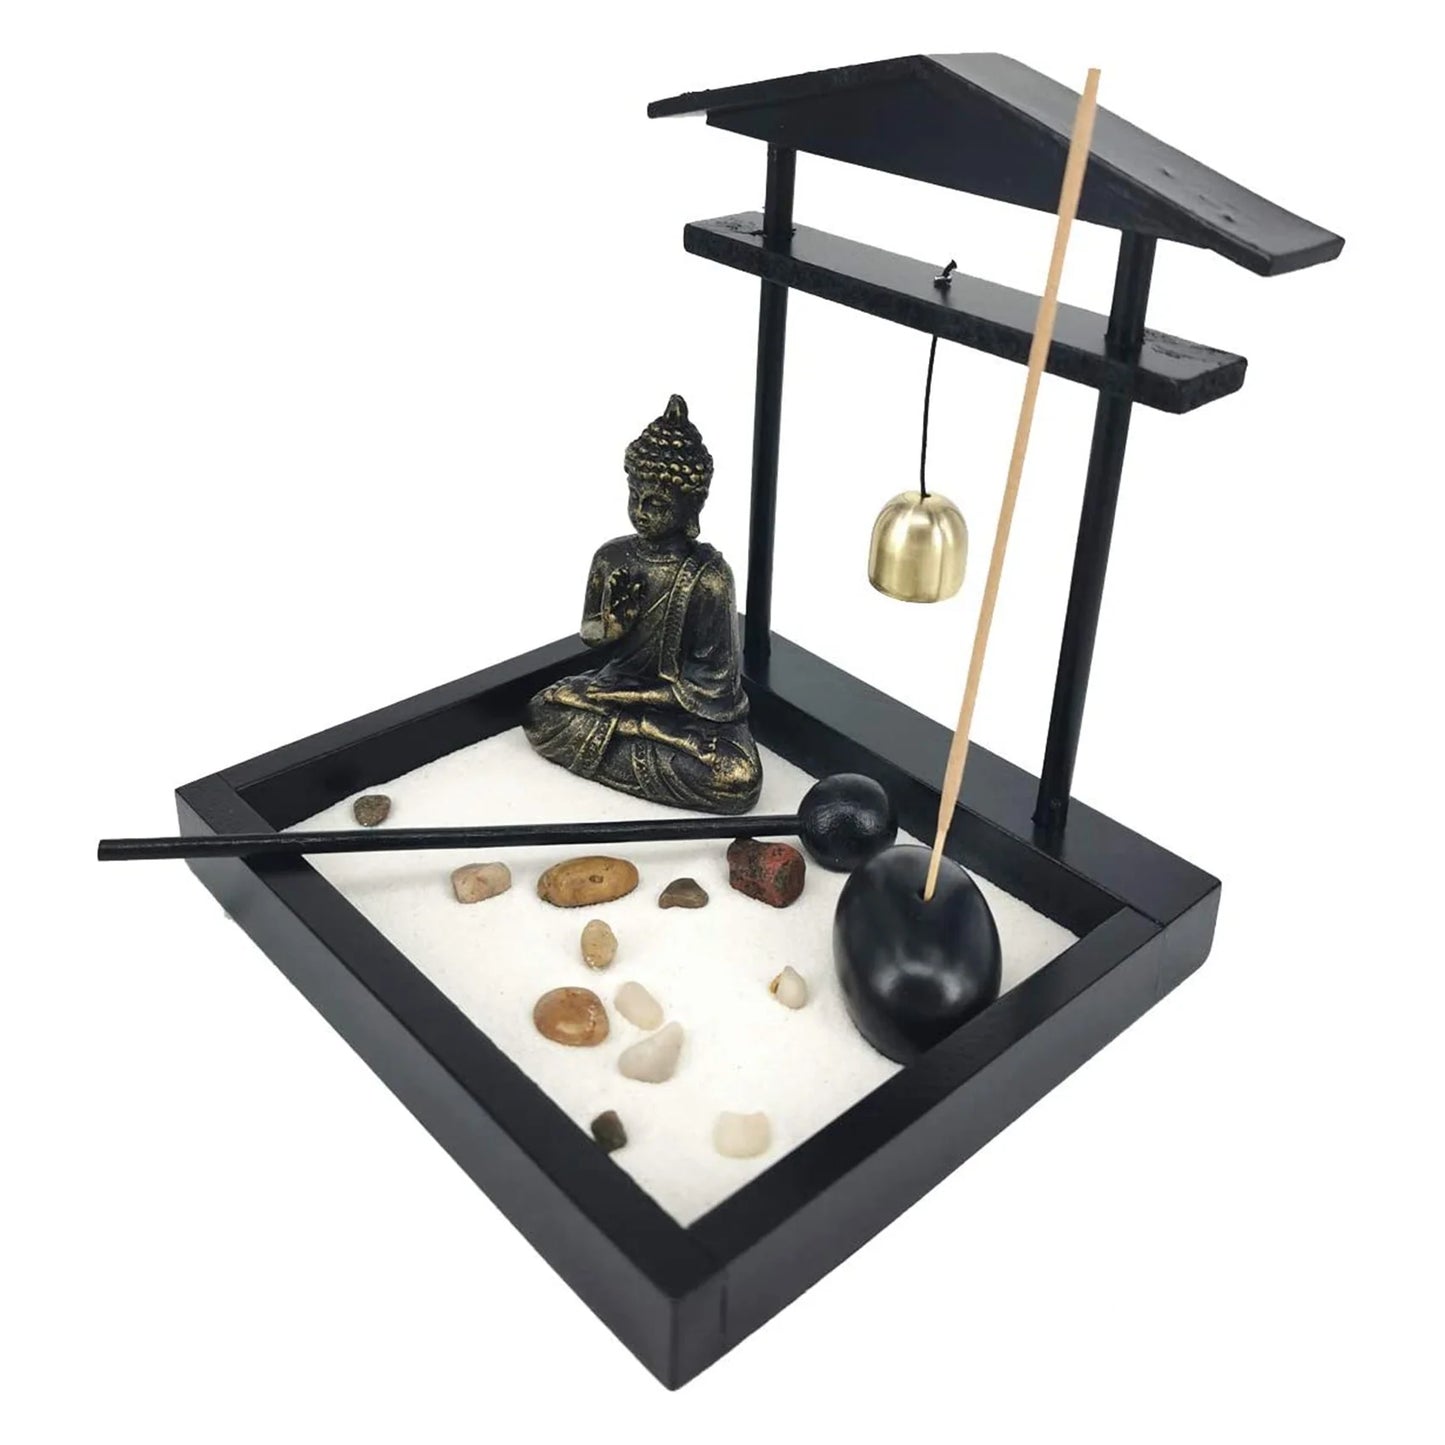 Desktop Zen Sand Garden Meditating Buddha estátua, mini kit de bandeja de areia do jardim zen para decoração de escritório em casa